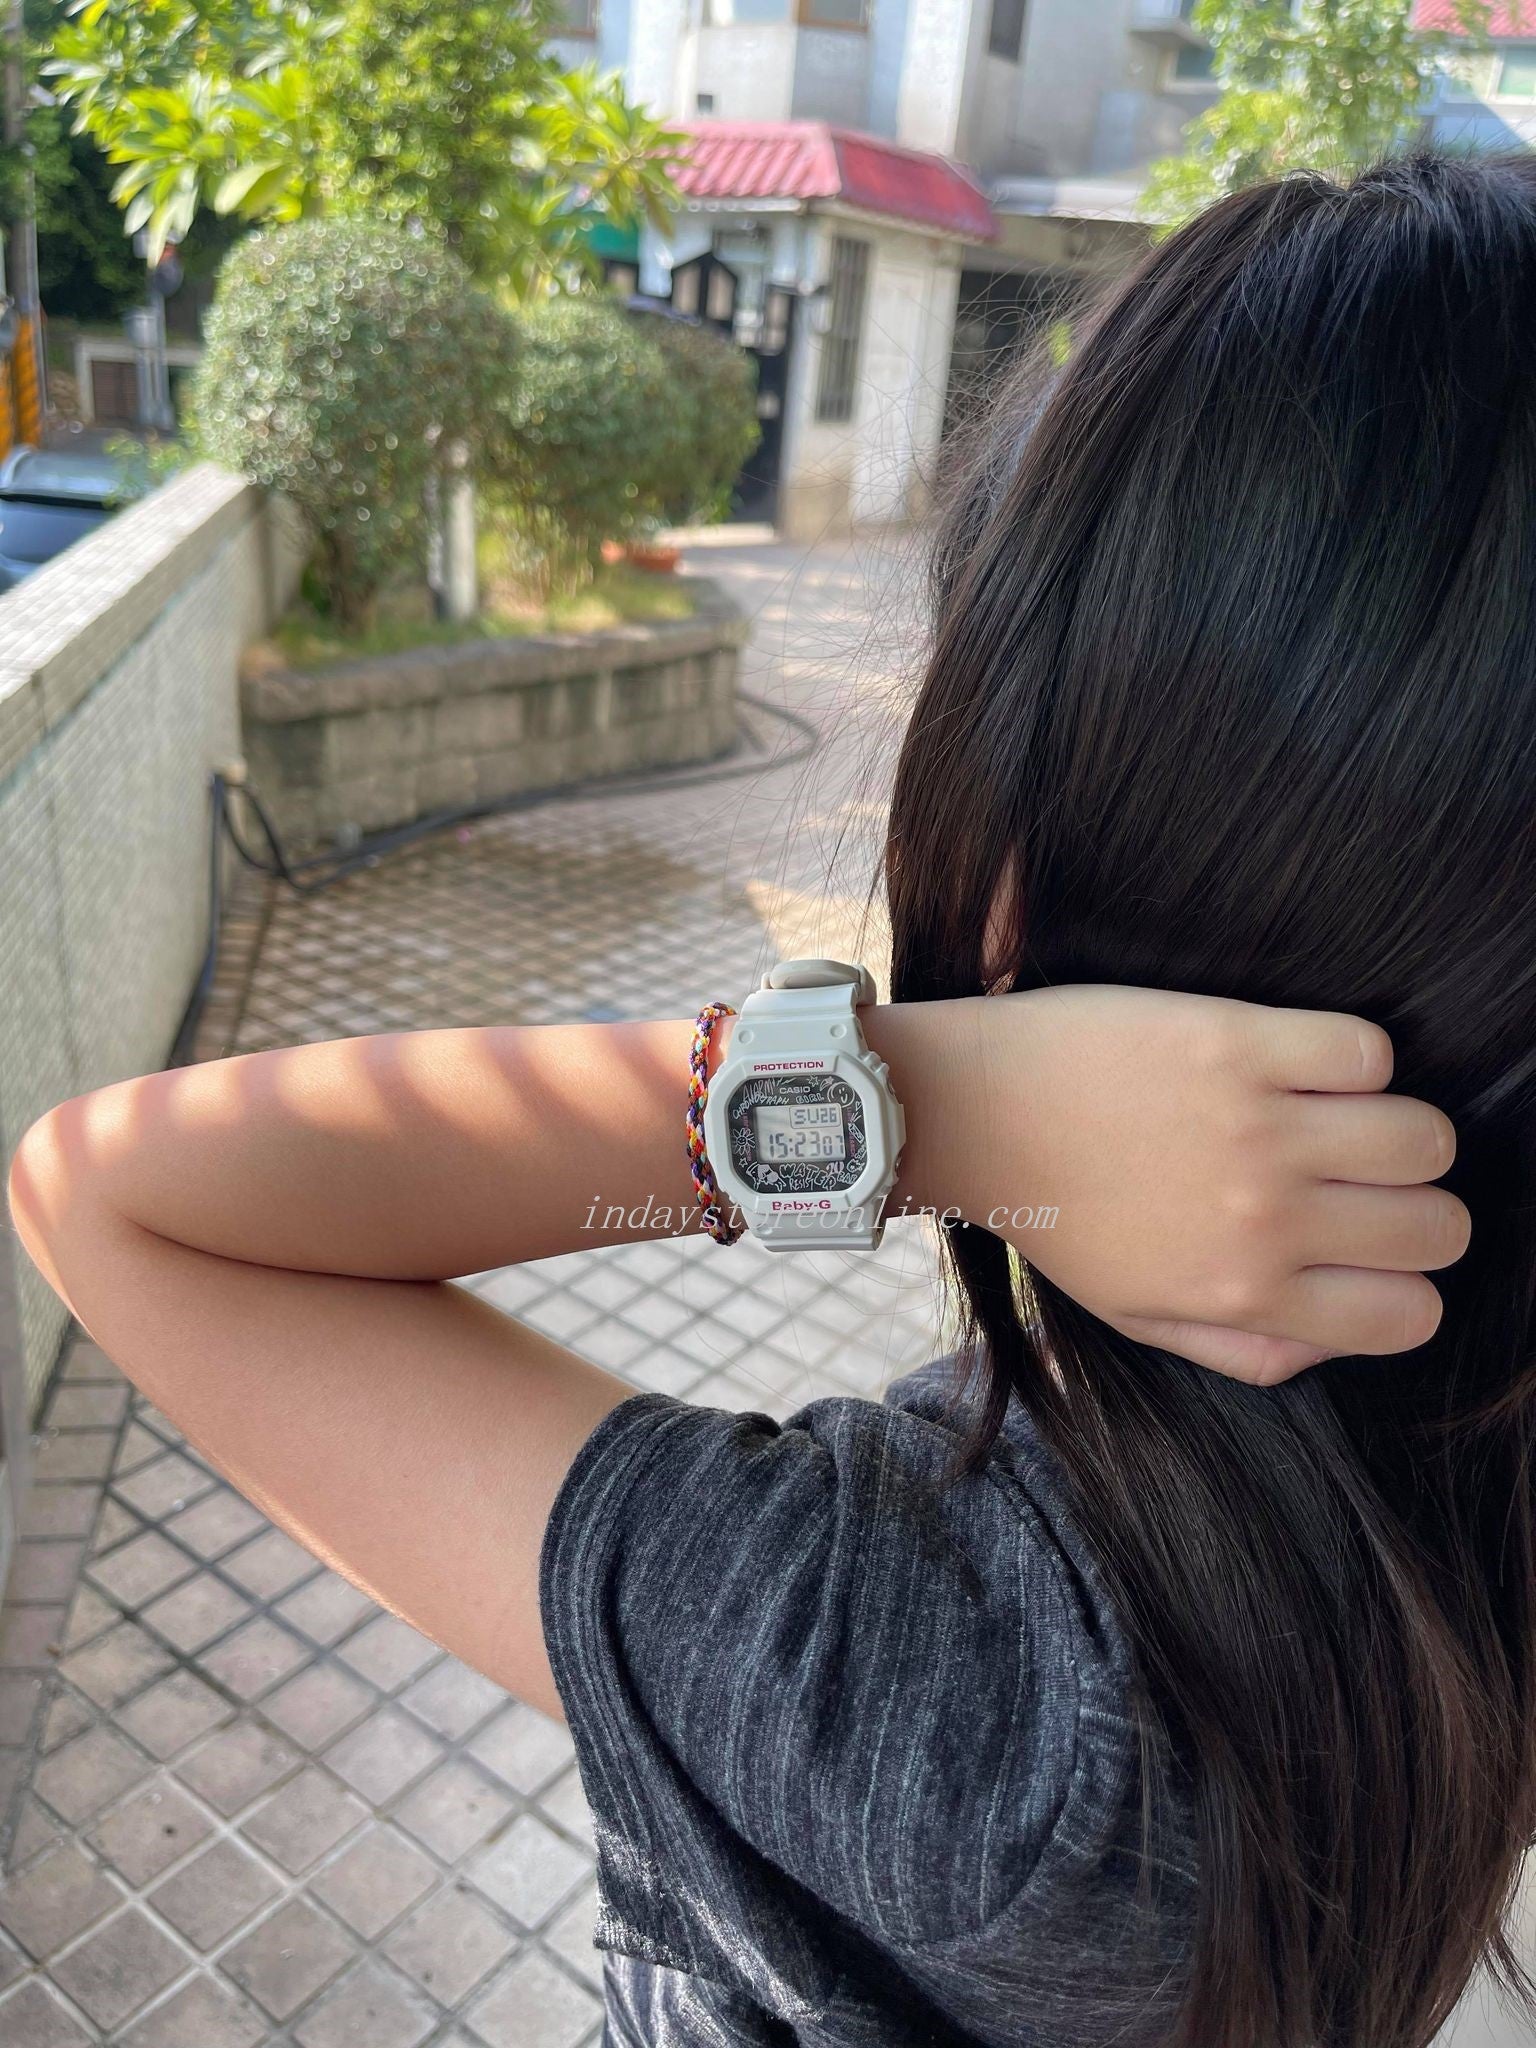 【新品最新作】CASIO ベビージー Face Graffiti レディース BGD-560SK-1JF 腕時計 新品 女性 ブラック 未使用品 その他